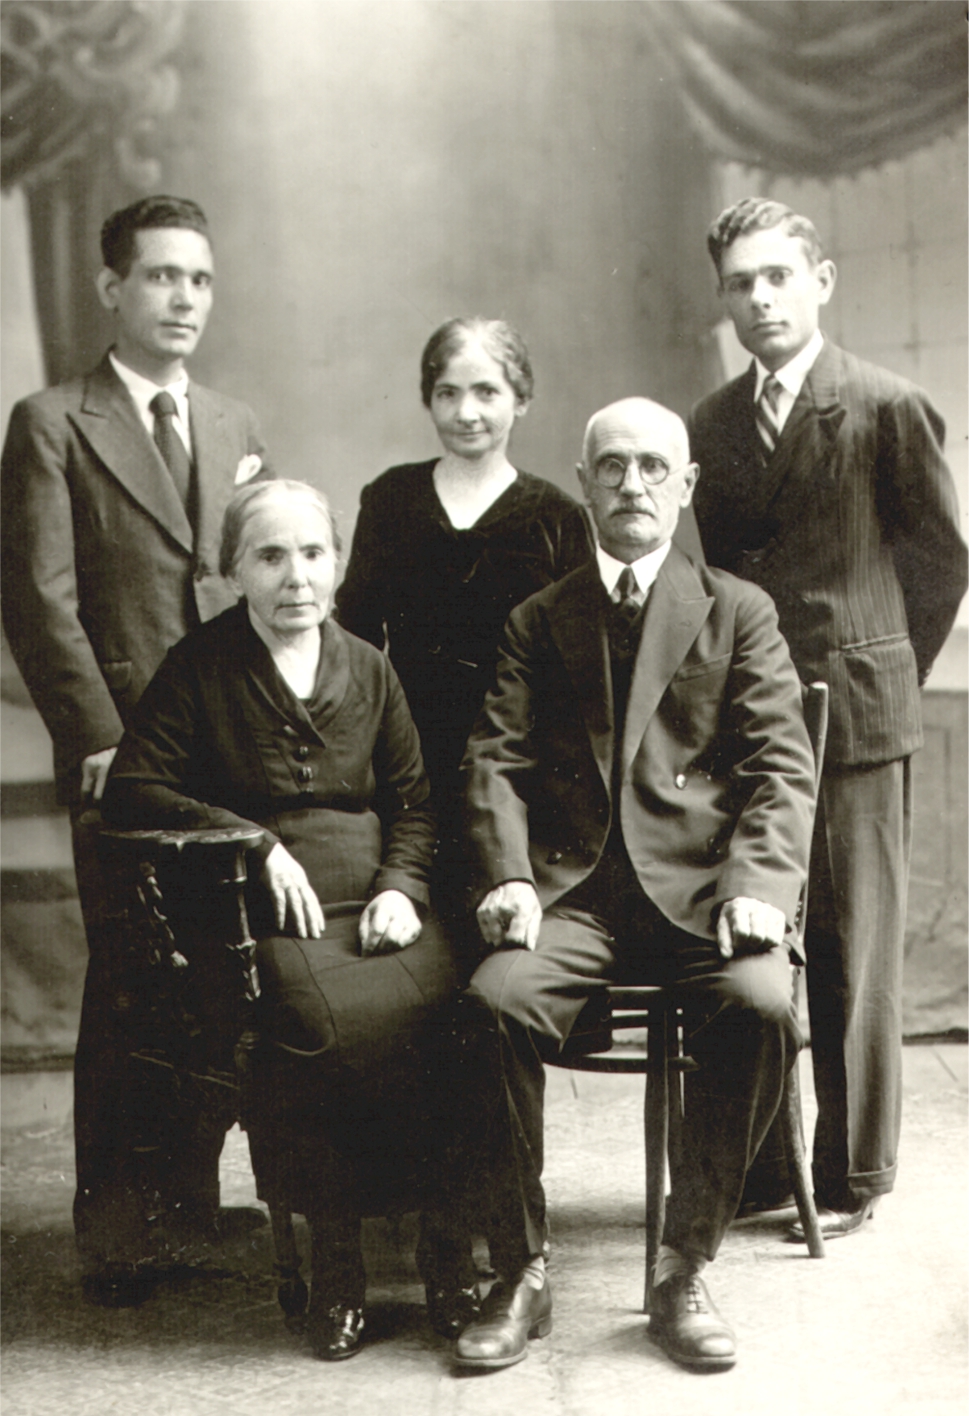 Տէր եւ Տիկին Սեդրակ եւ Մարիամ Պալըգճեան, որդիները՝ Օննիկ եւ Գեւորգ, կենտրոնում՝ Ասանէթ Եըլանճեան, Կահիրէ, 1933 թ.։